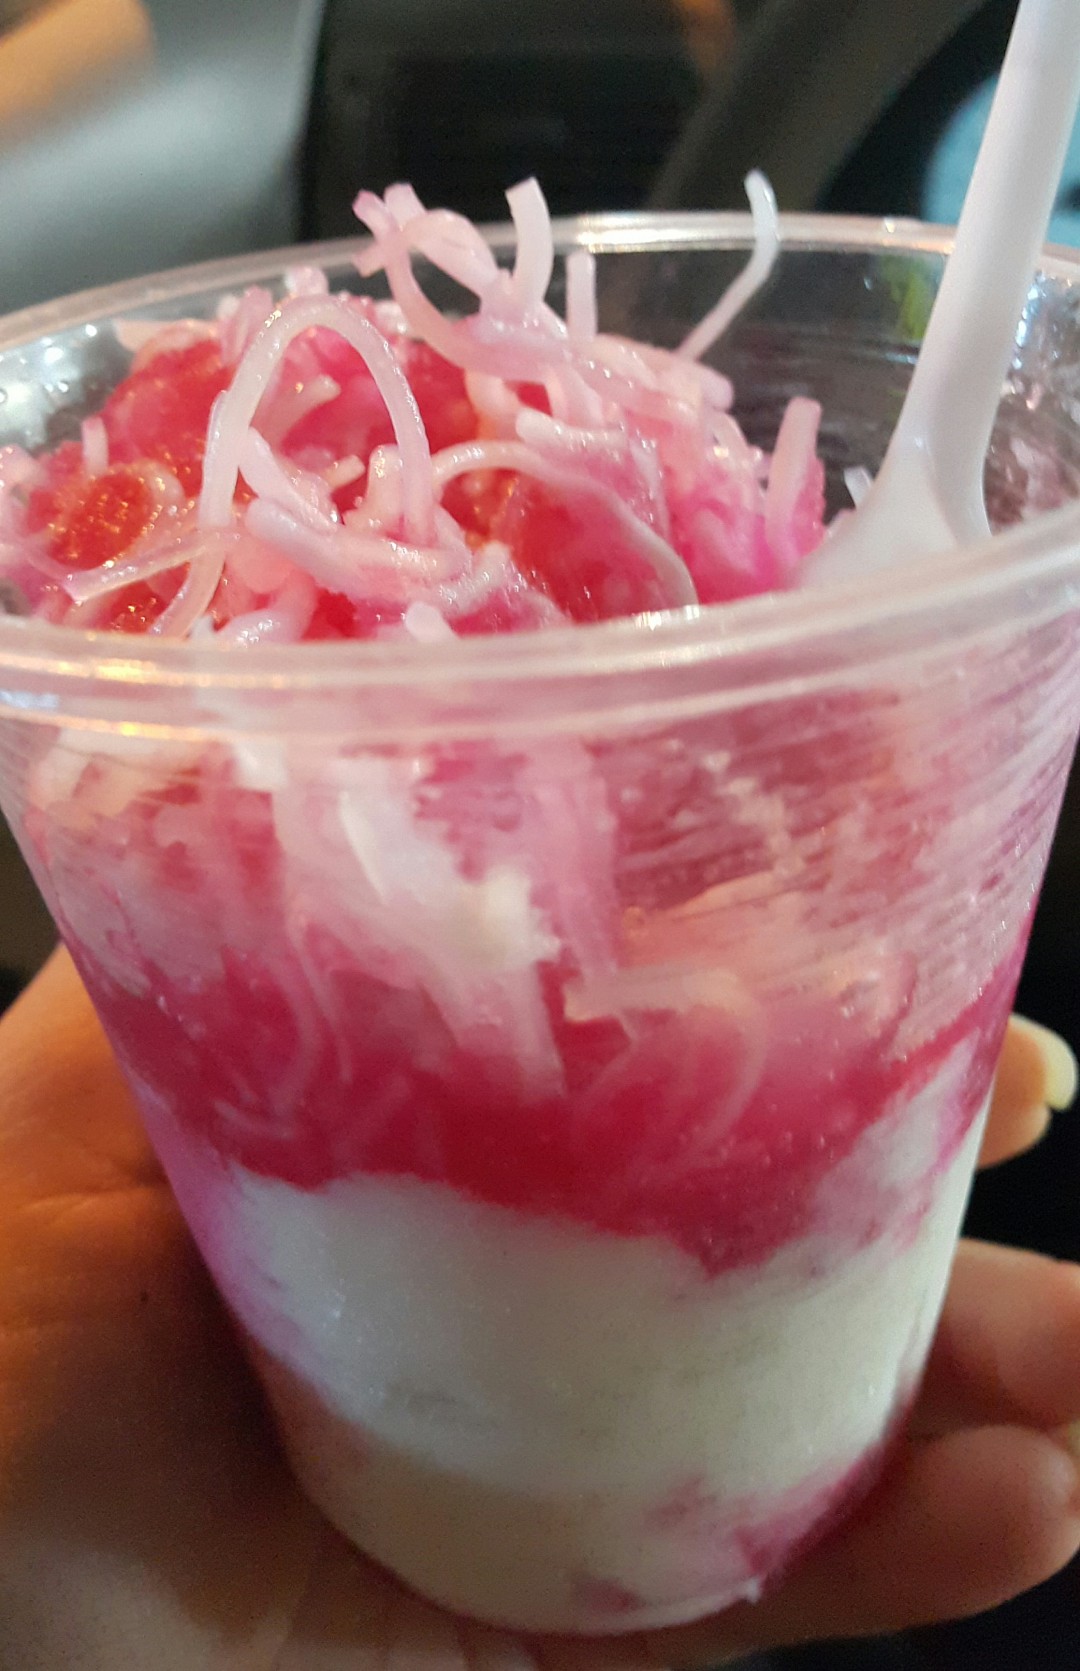 بستنی فالوده شیرازی
Faloodeh & icecream 😜 @ Kabab Sarai Shiraz - Bahrain